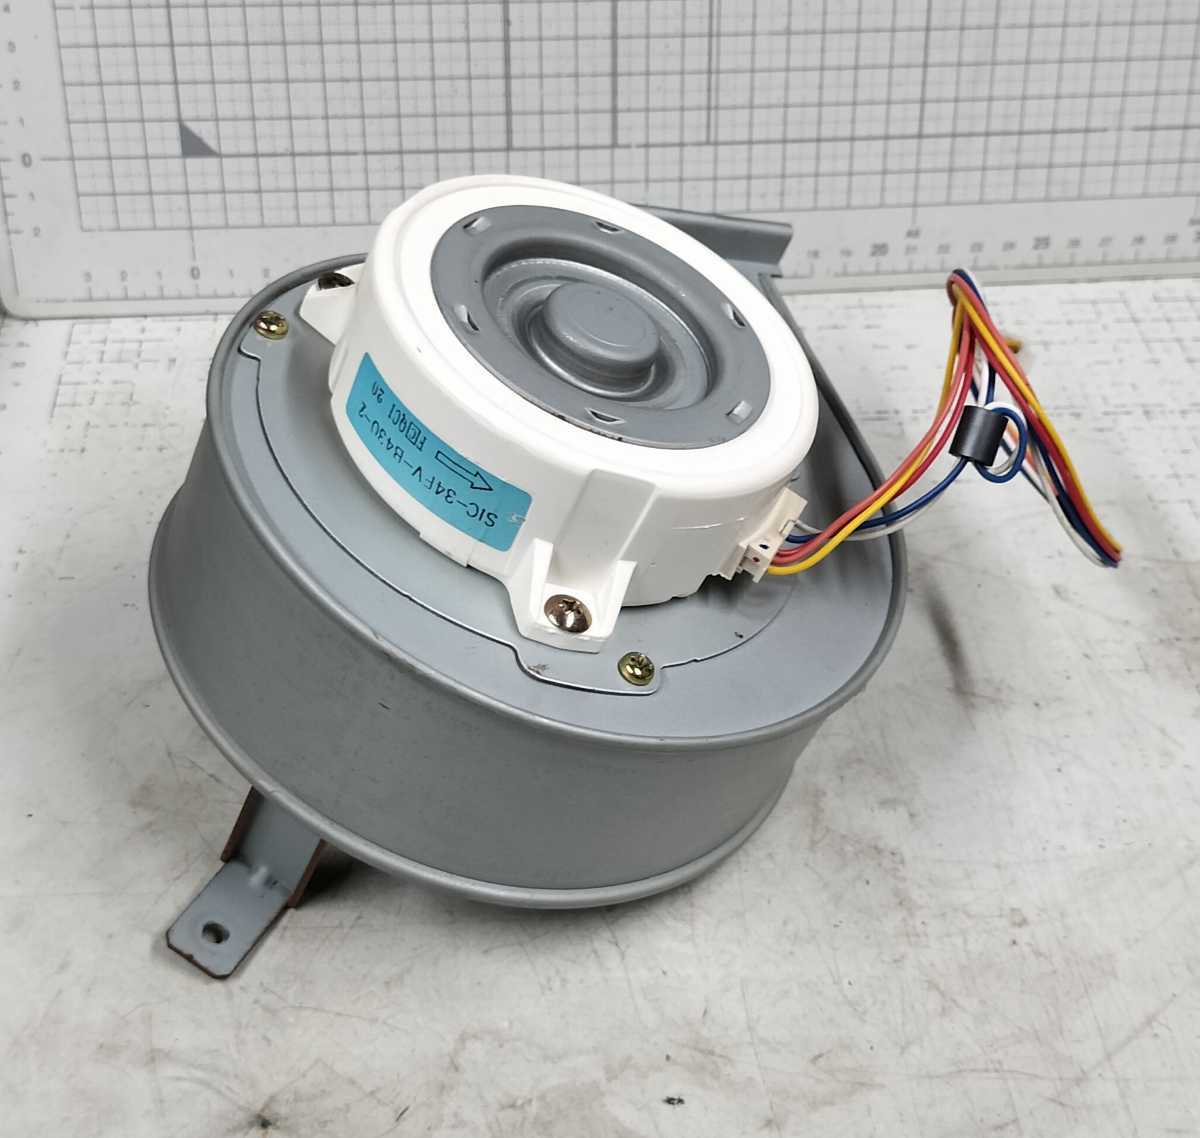 5-paroma/ water heater from / ventilator fan / Sirocco fan / burning fan /SIC-43FV-B430-2/ used parts 